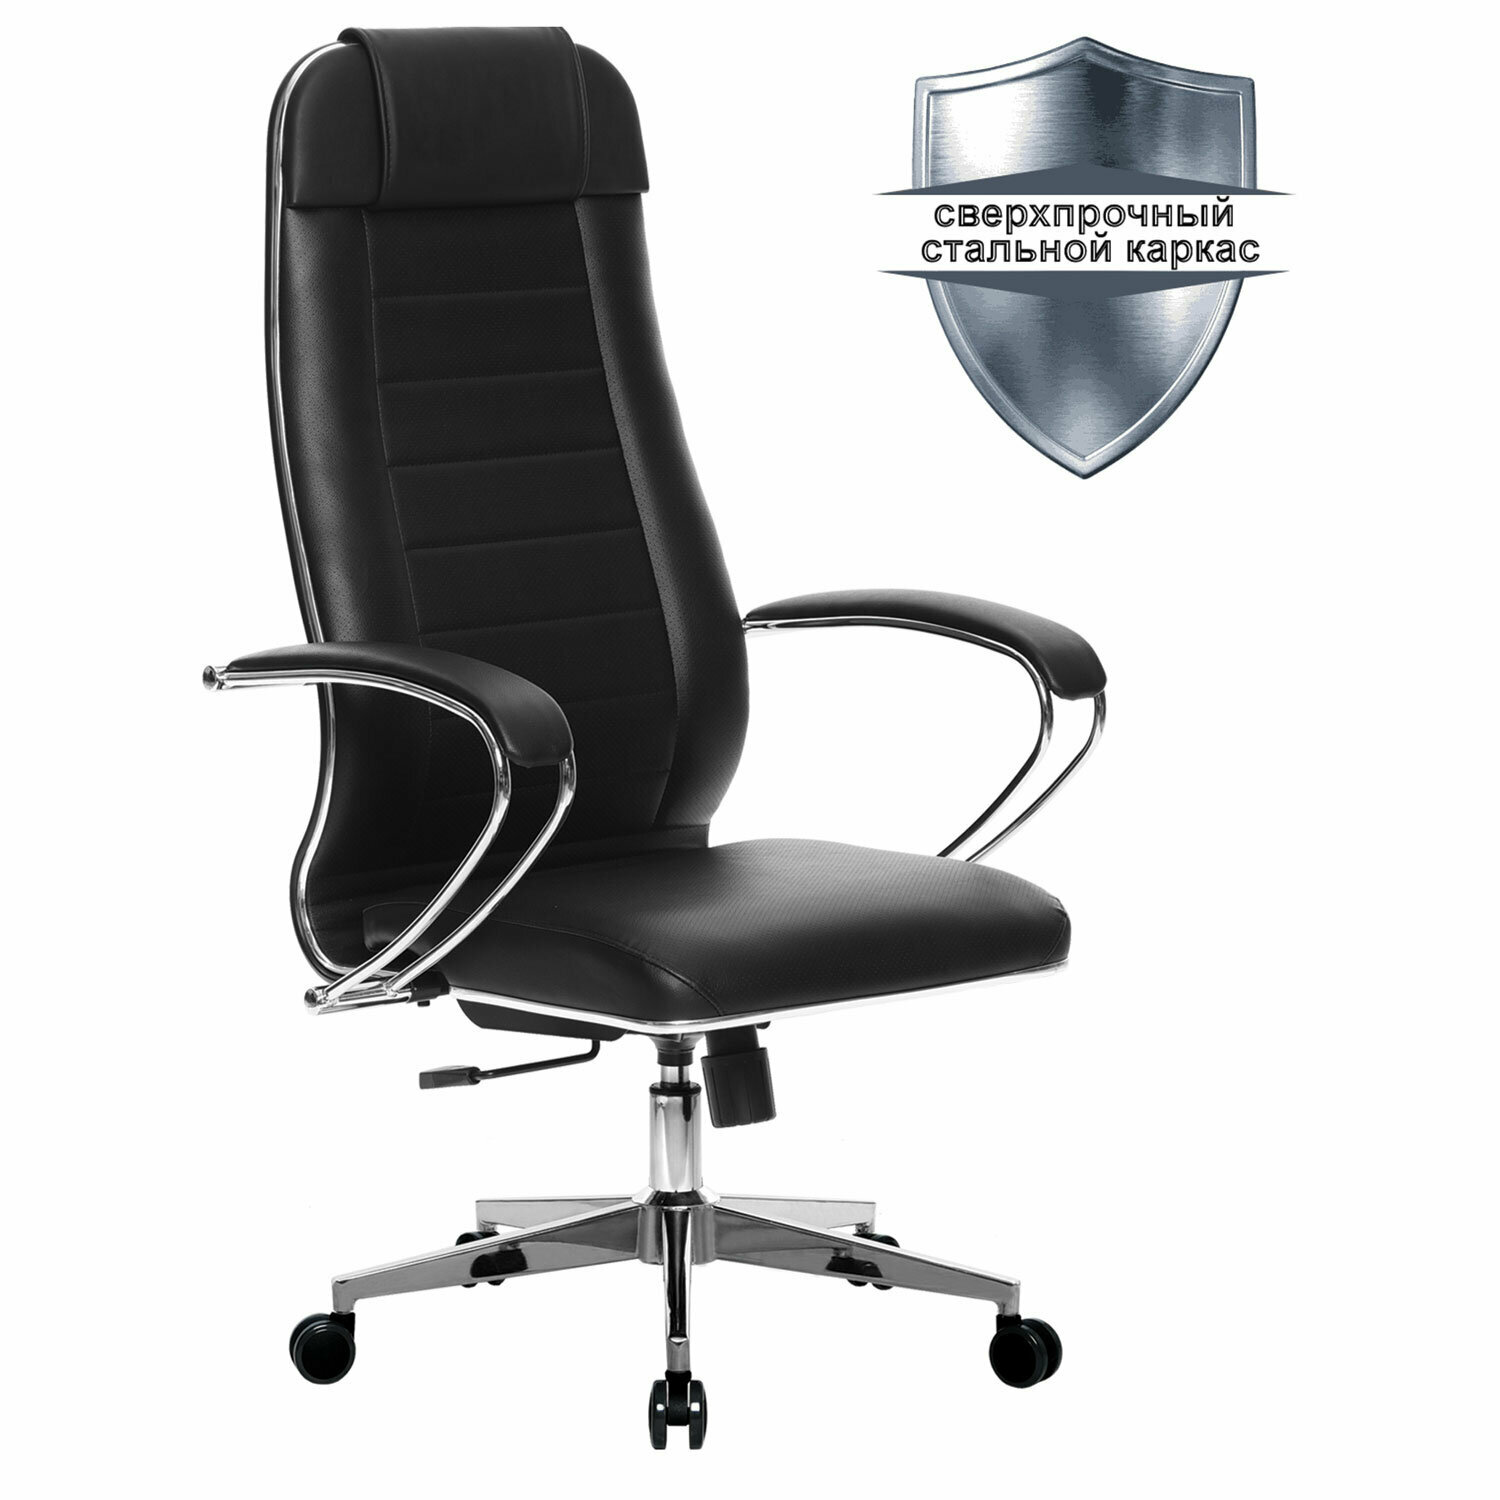 Кресло офисное МЕТТА К-29 532475 хром, рецик. кожа, сиденье и спинка мягкие, черное